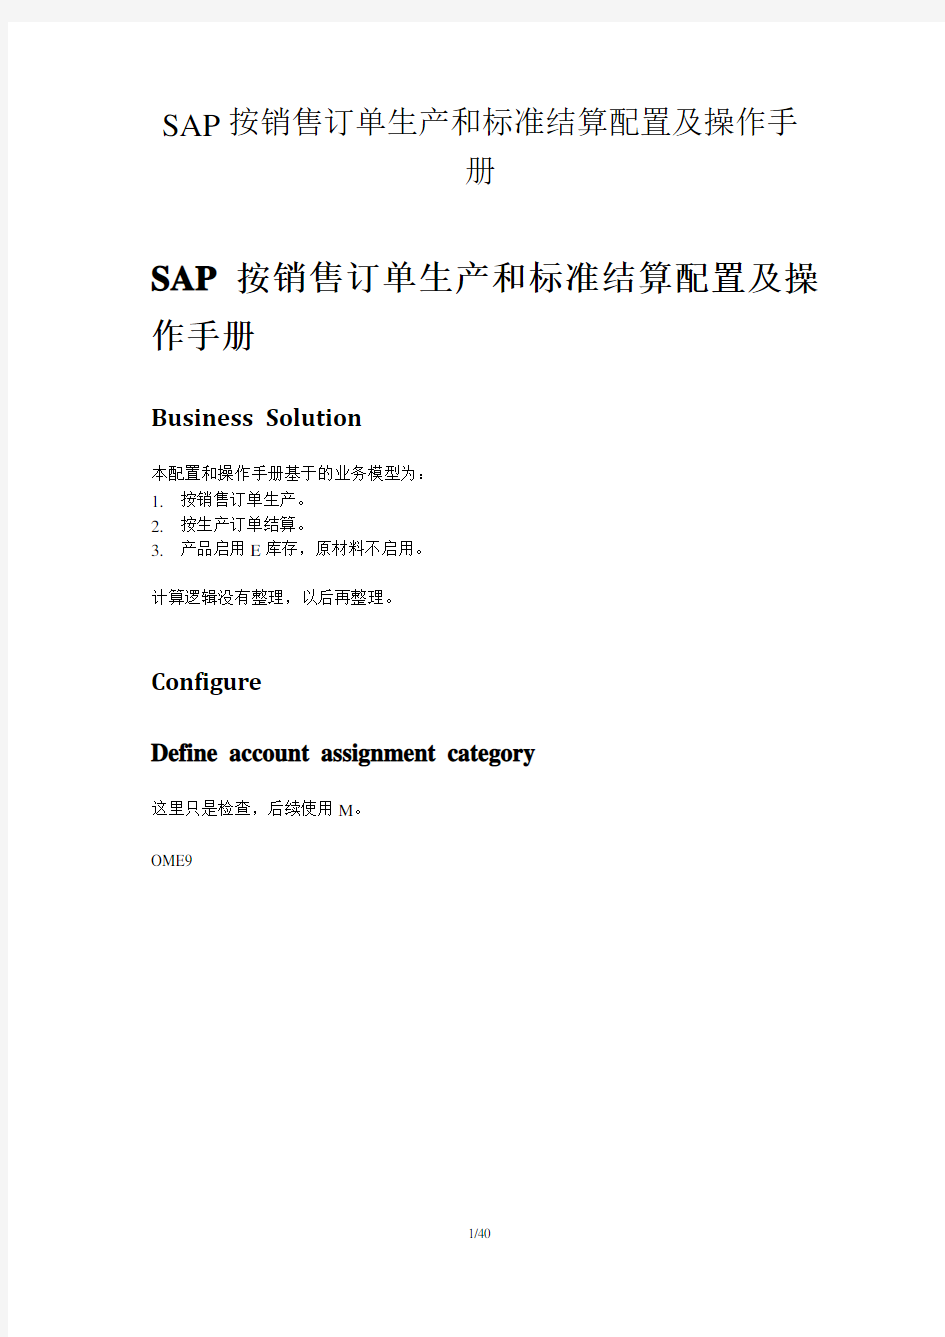 SAP_CO_PC-SAP按销售订单生产和标准结算配置及操作手册-V1.0-trigger_lau